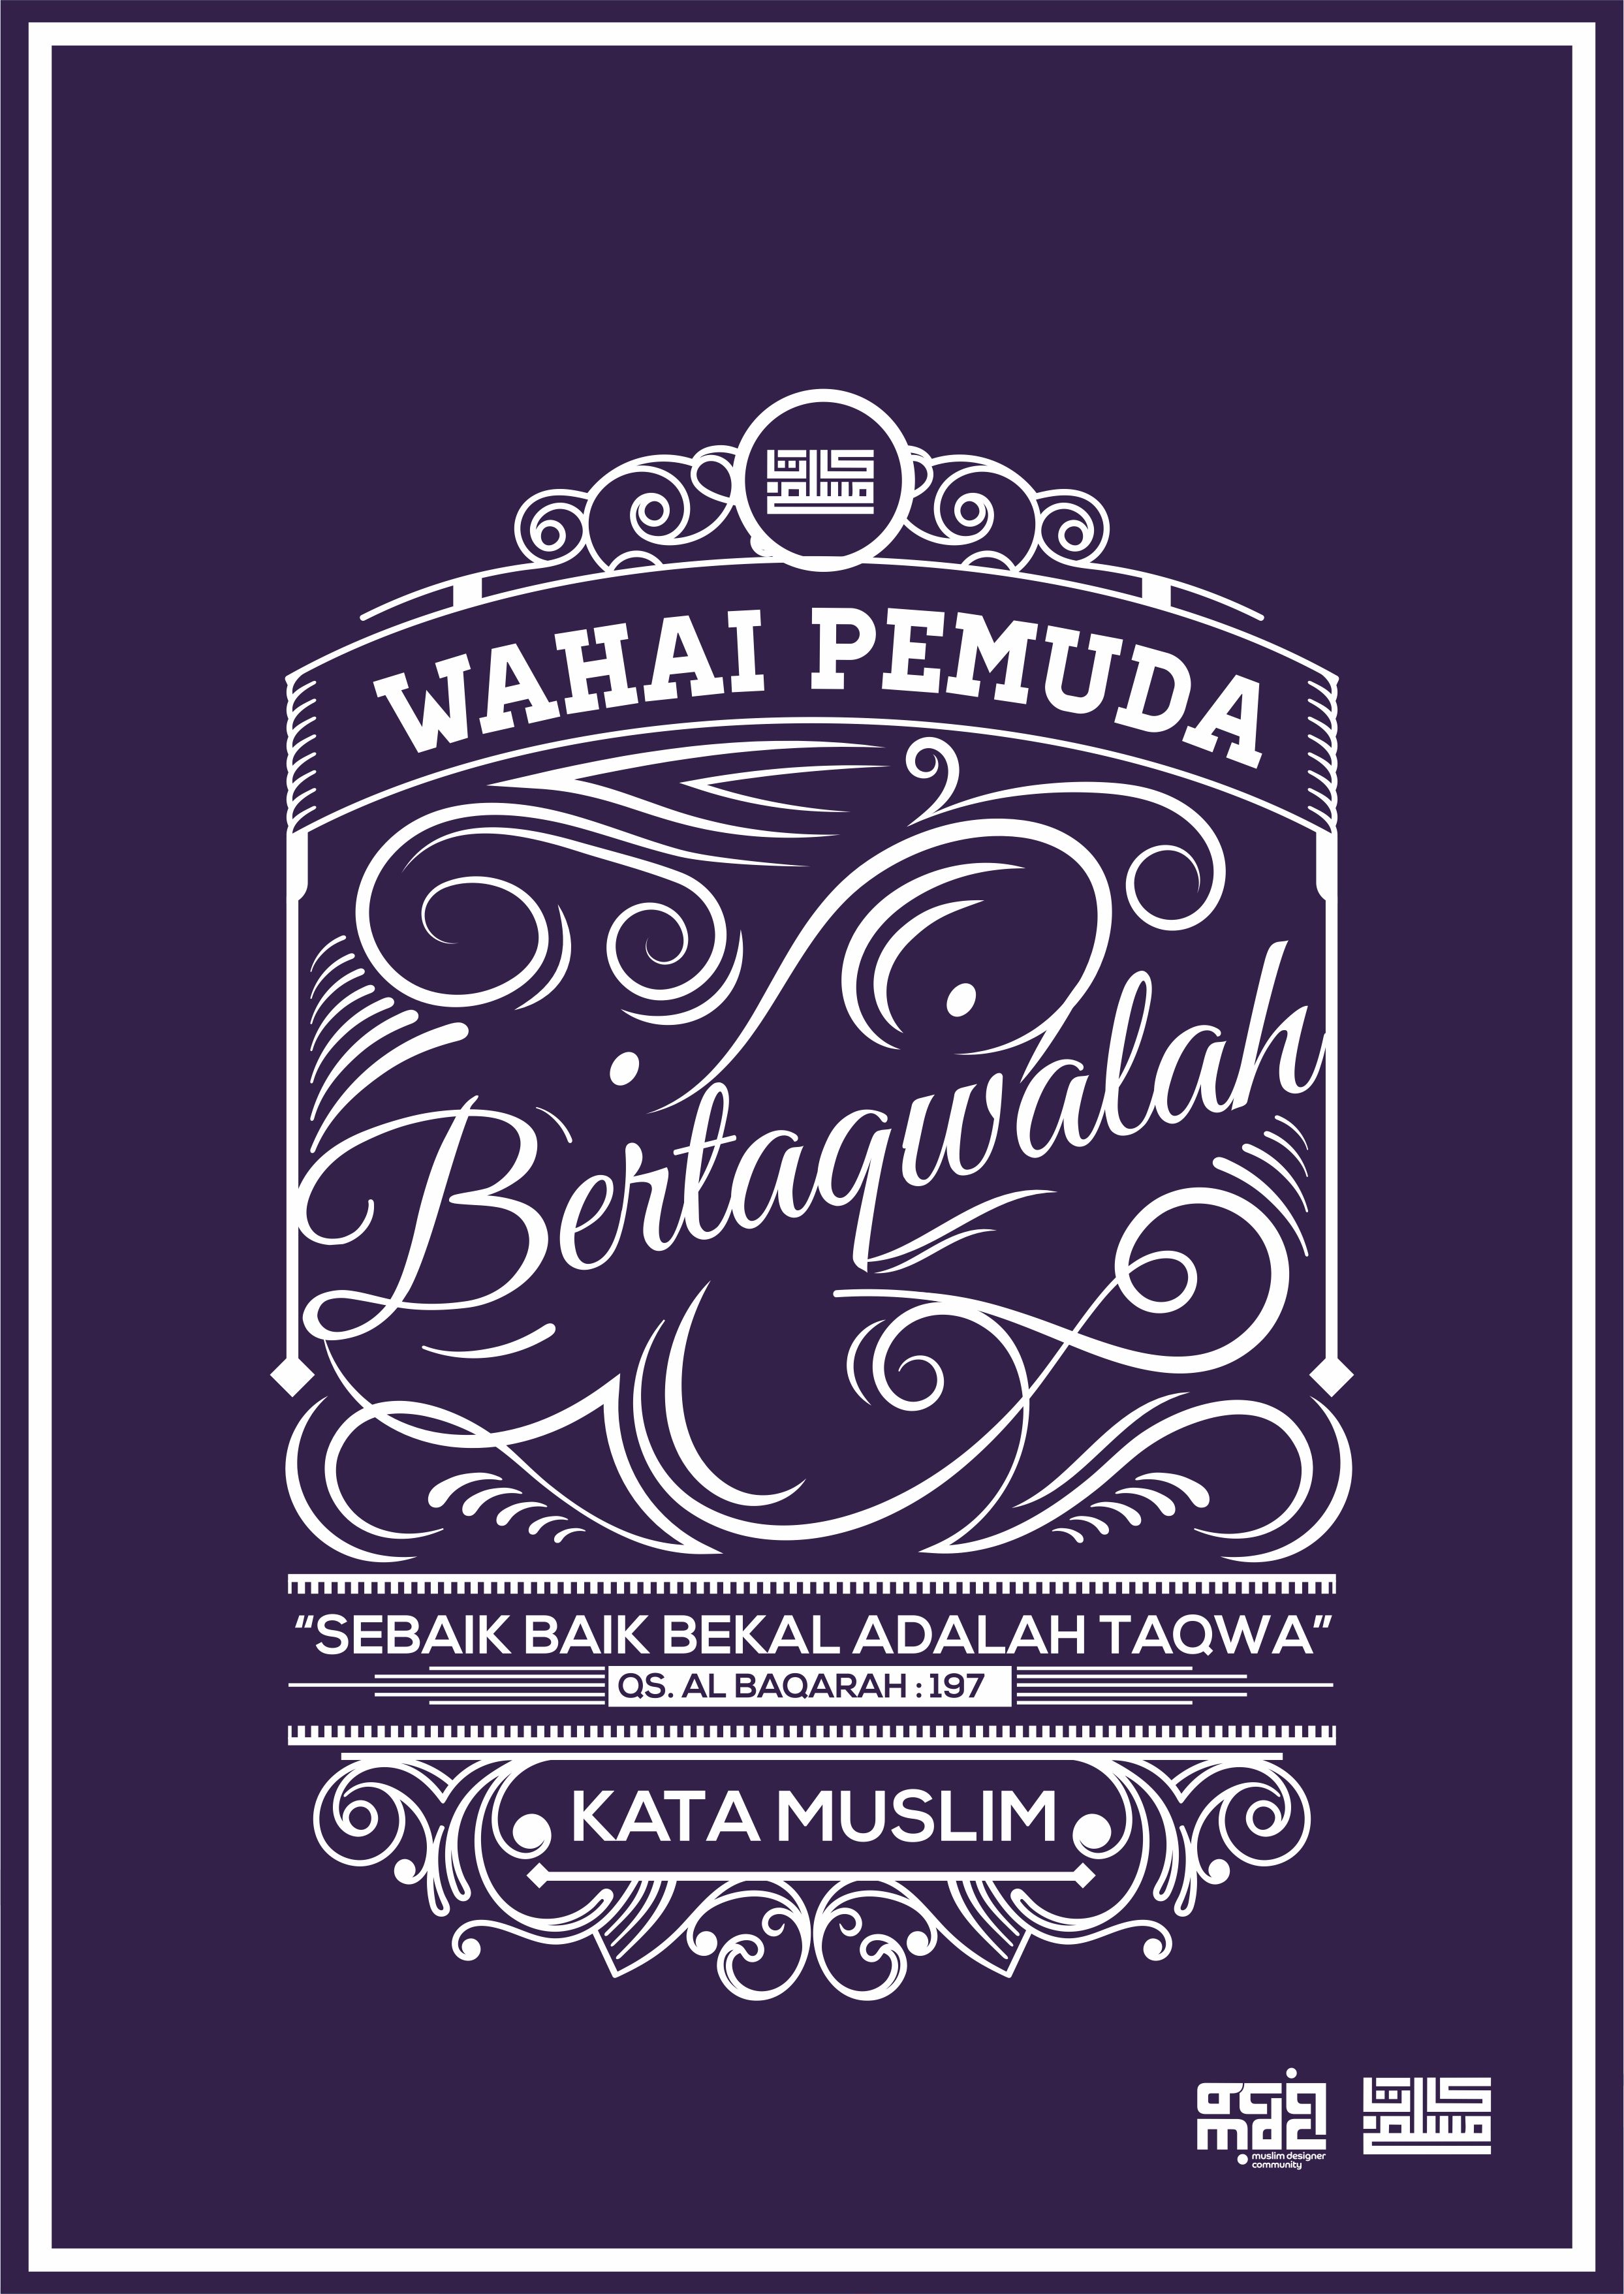 Download Gratis Desain Poster Dakwah Karya Kata Muslim Hello